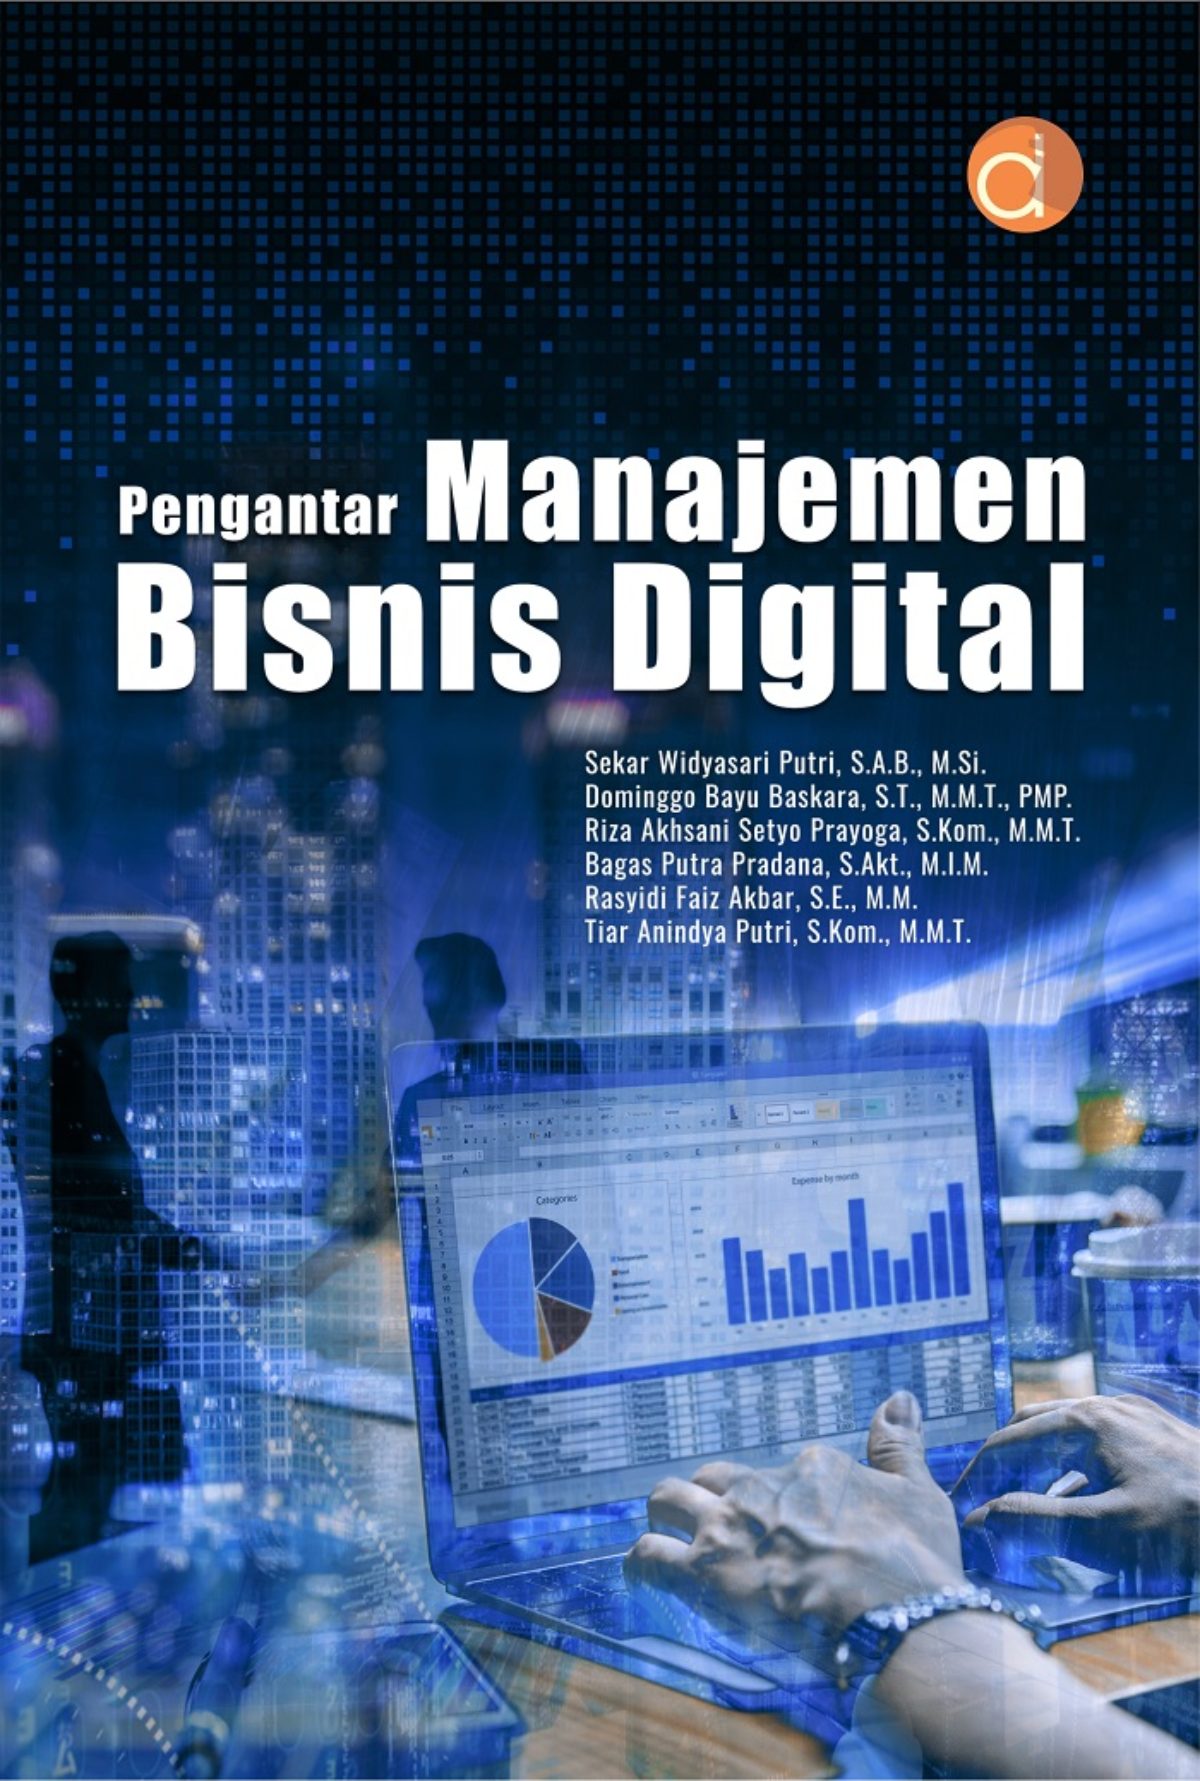 Pengantar manajemen bisnis digital